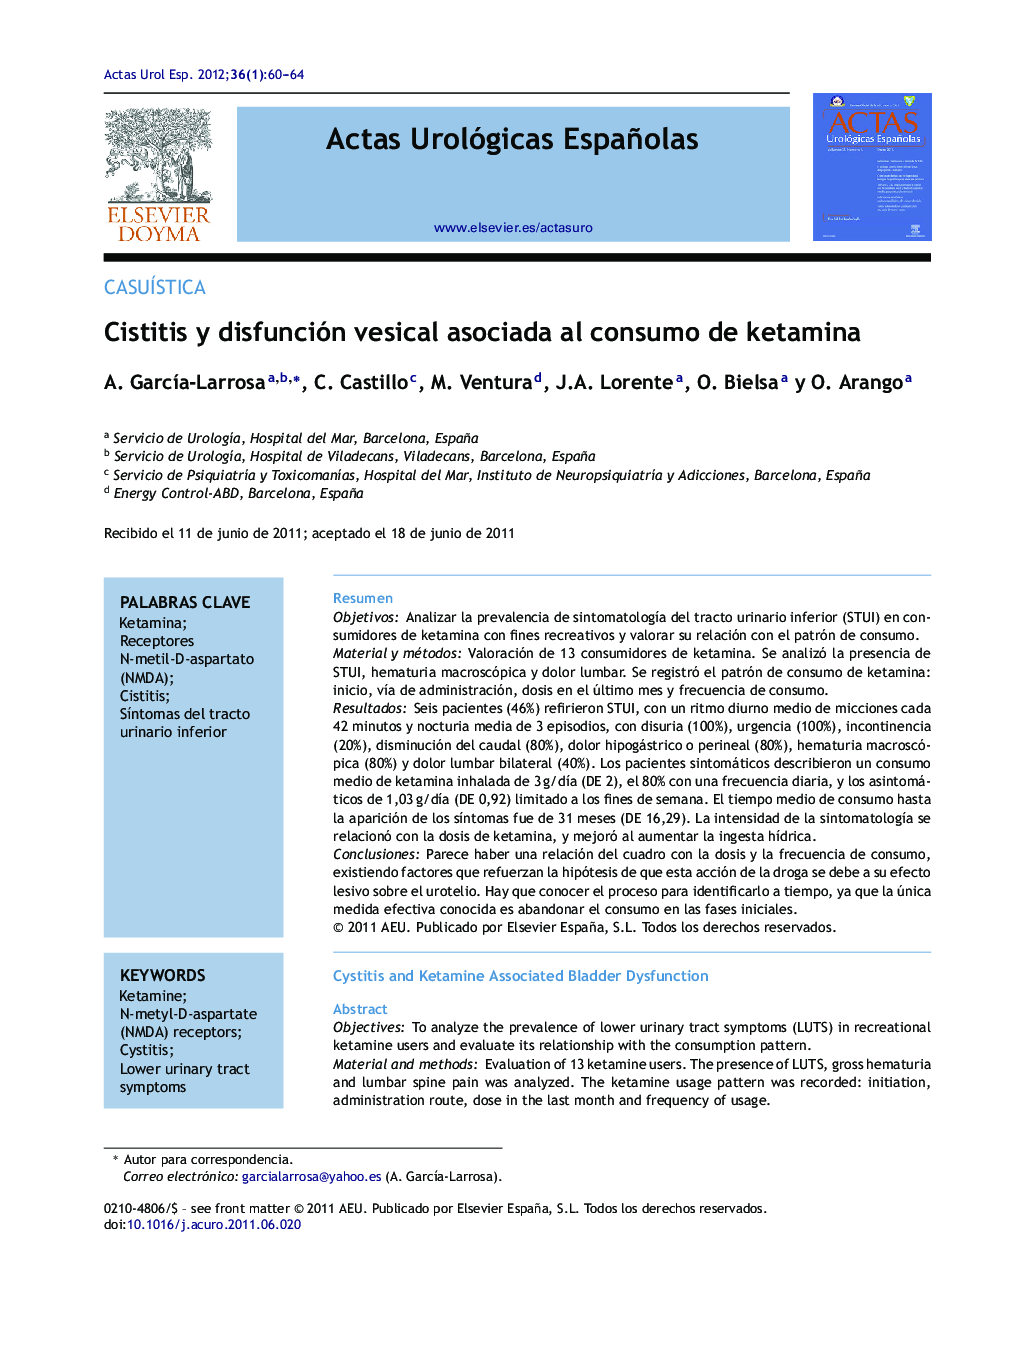 Cistitis y disfunción vesical asociada al consumo de ketamina